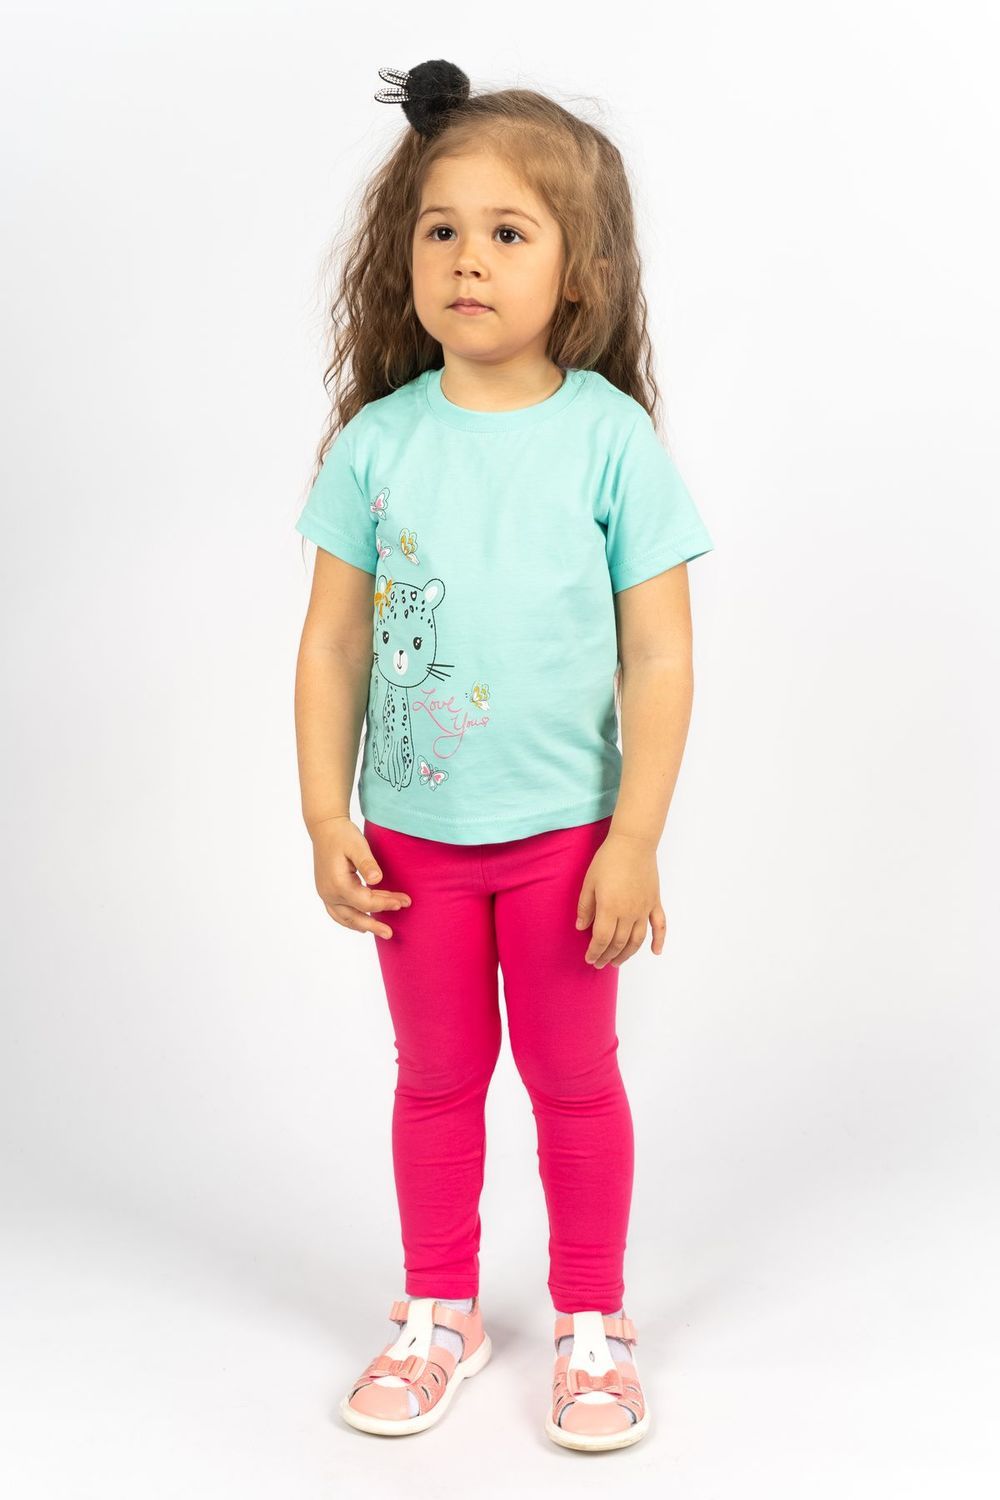 Комплект для девочки 41101 (футболка-лосины) - мятный/розовый